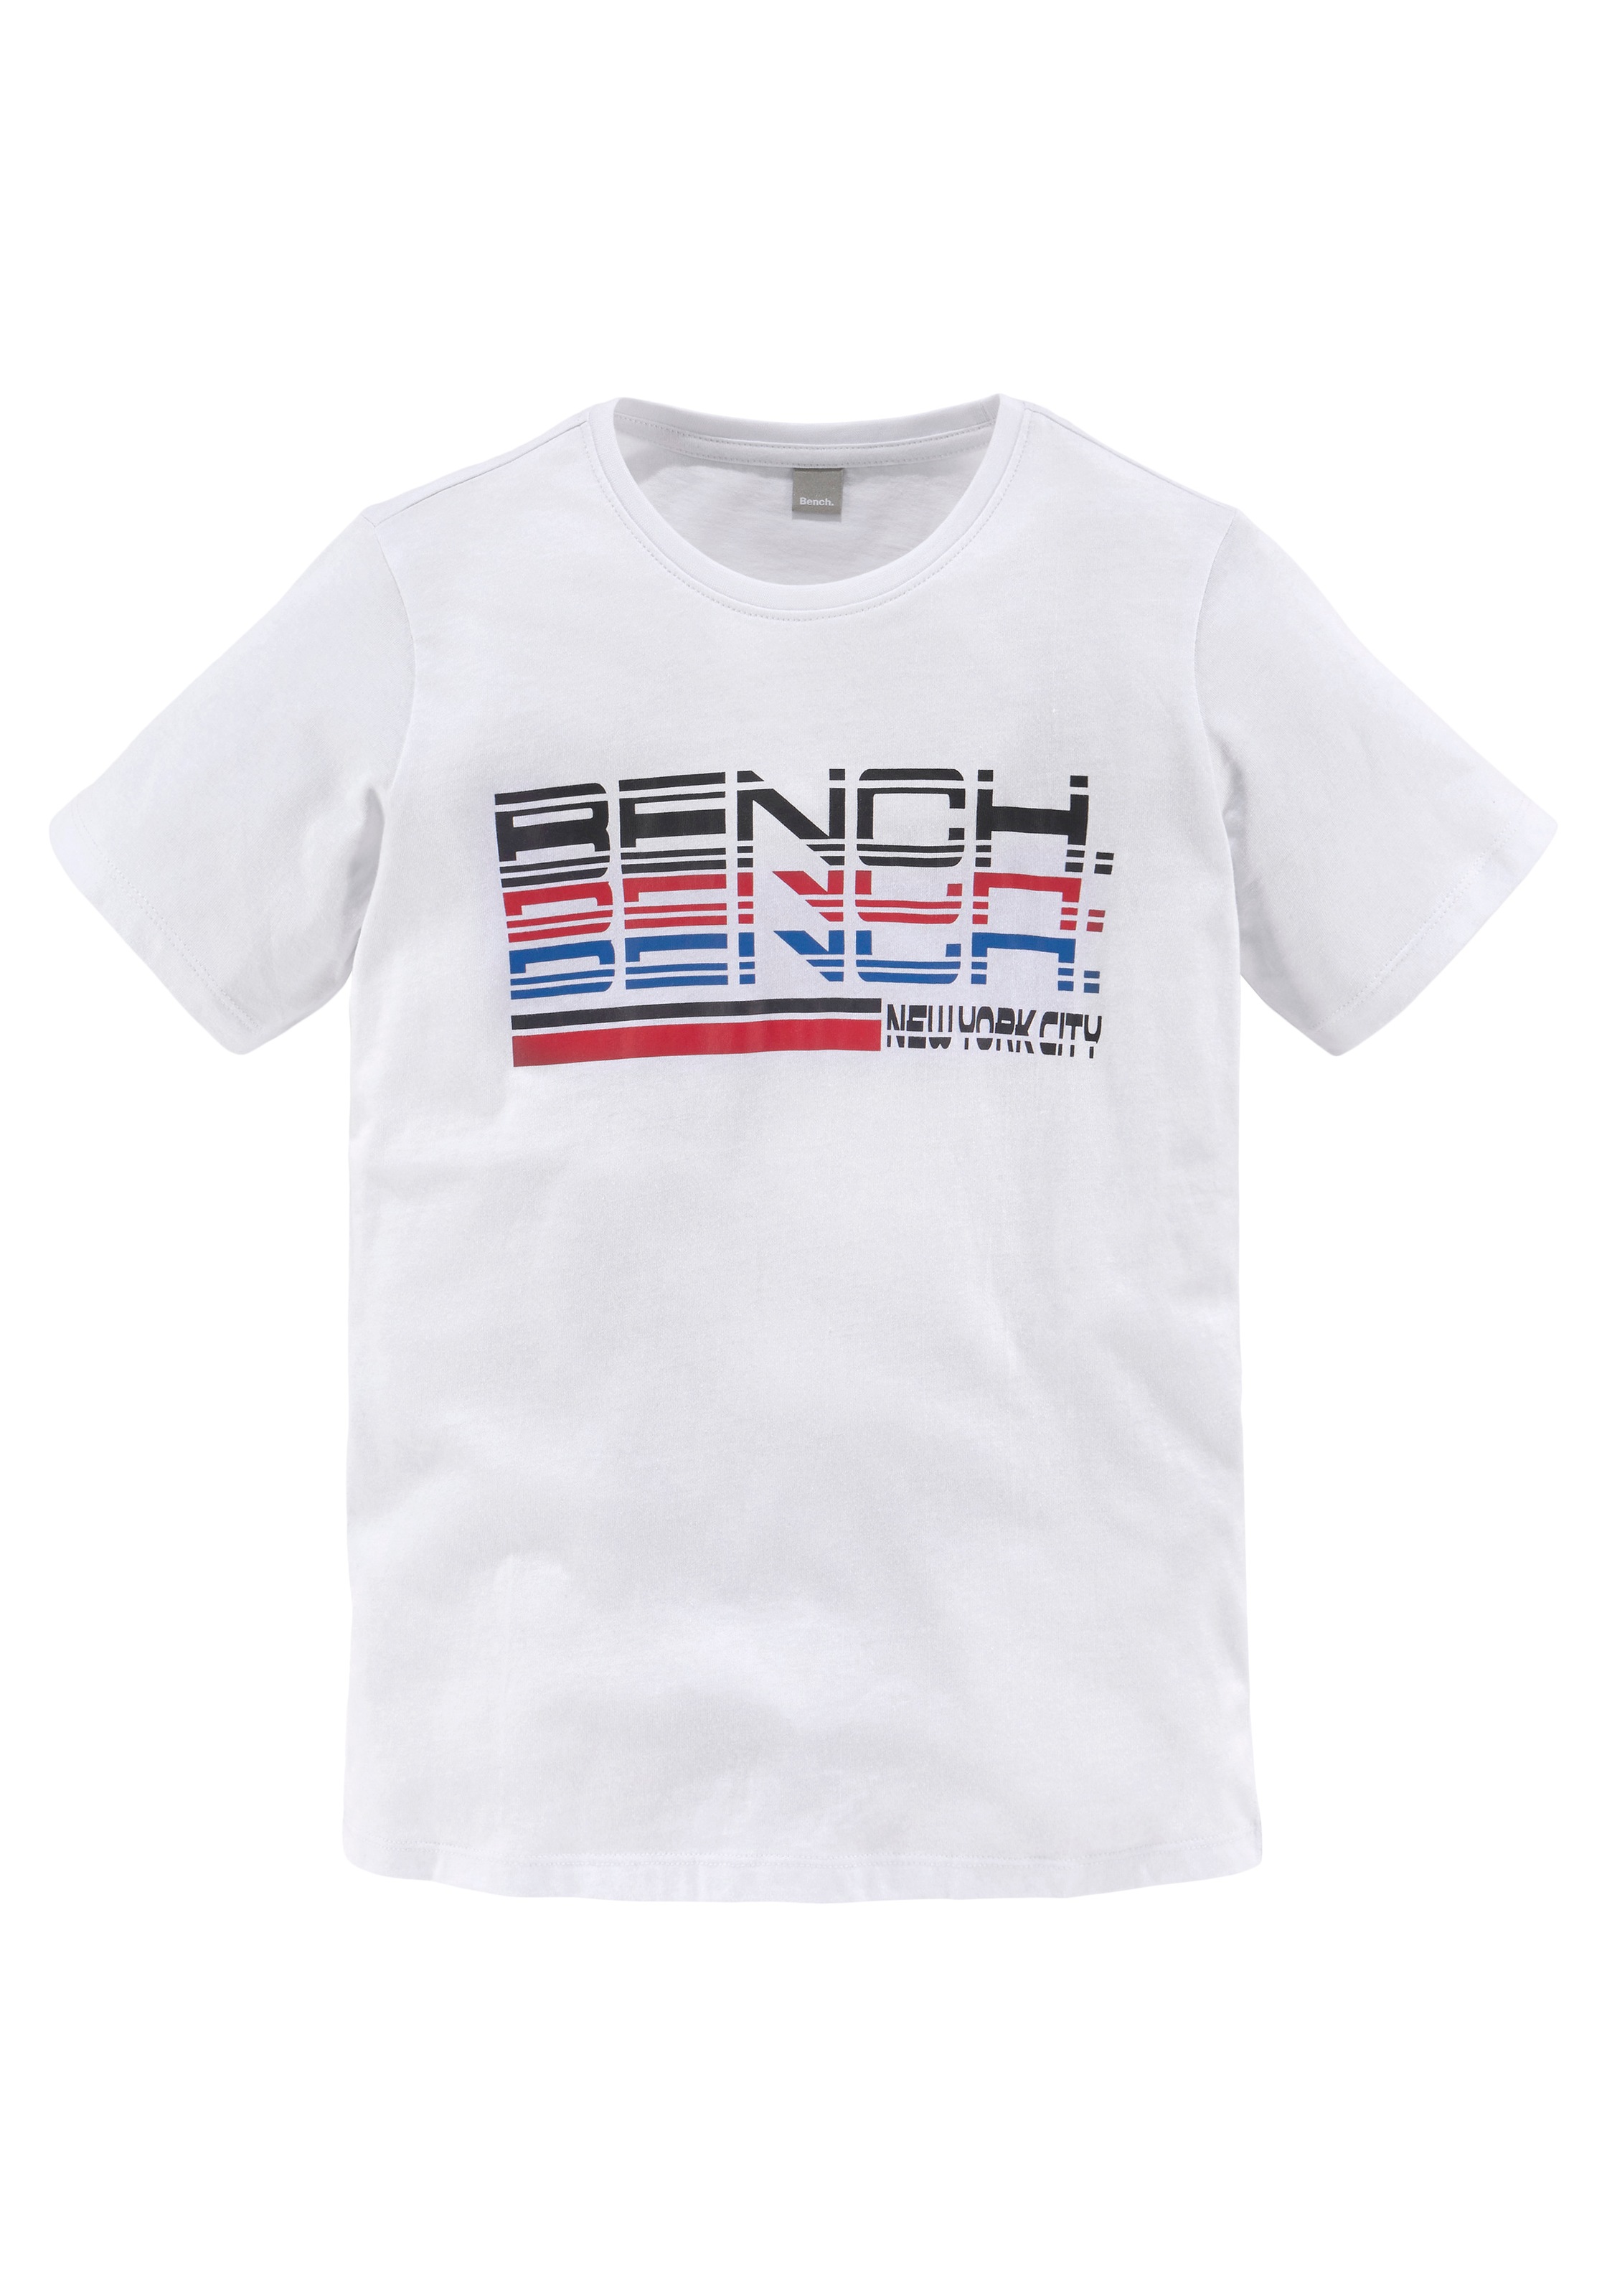 OTTO T-Shirt, trendiger bei Bench. Logoprint